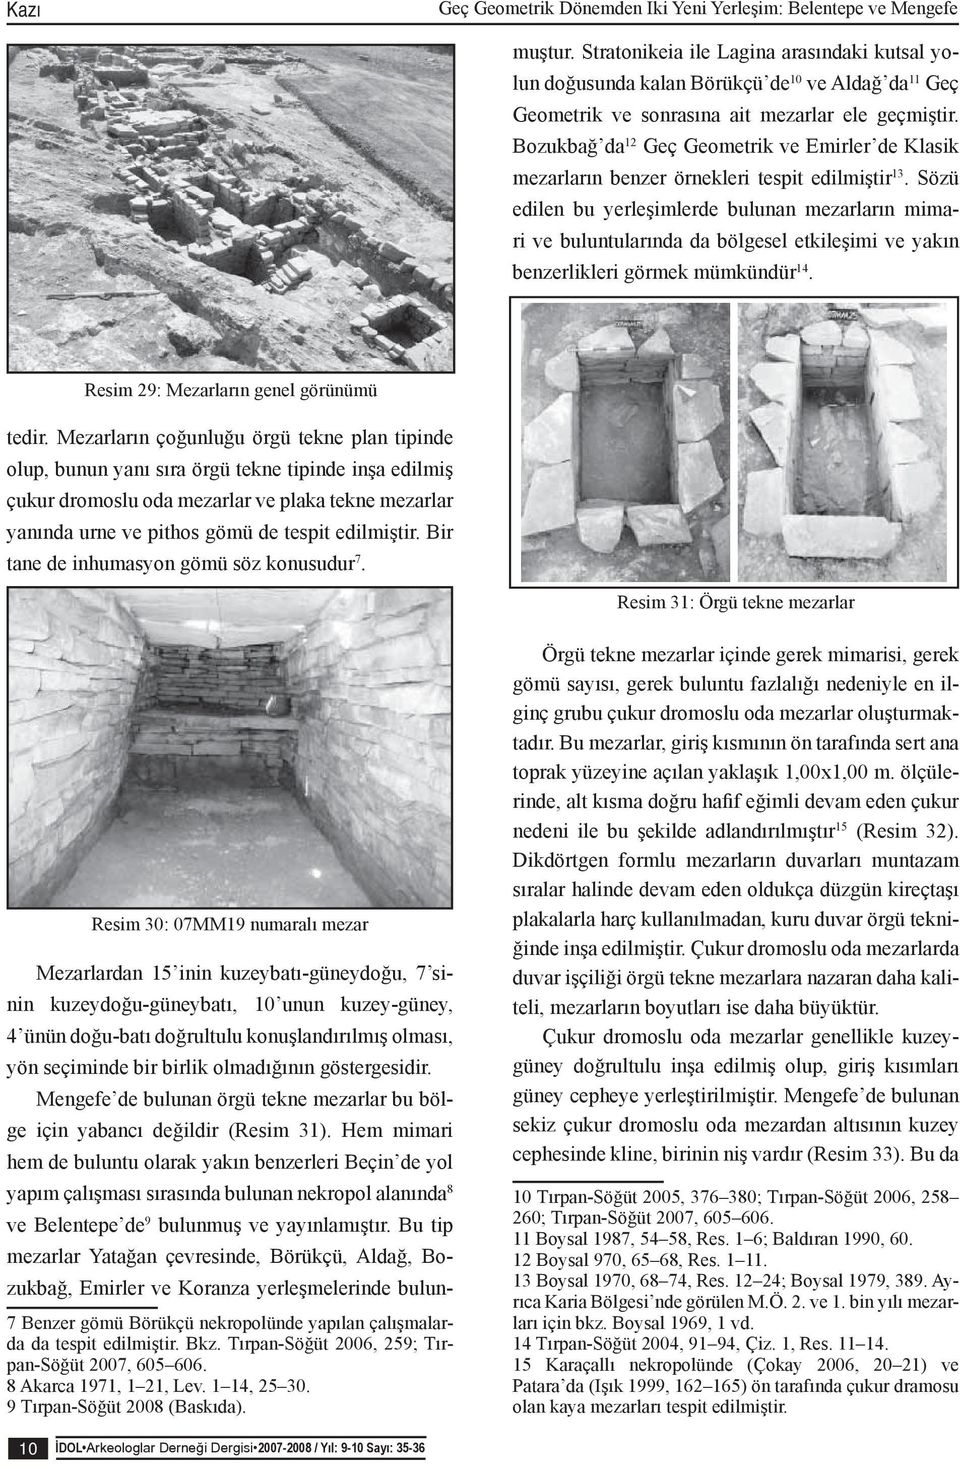 Bozukbağ da 12 Geç Geometrik ve Emirler de Klasik mezarların benzer örnekleri tespit edilmiştir 13.